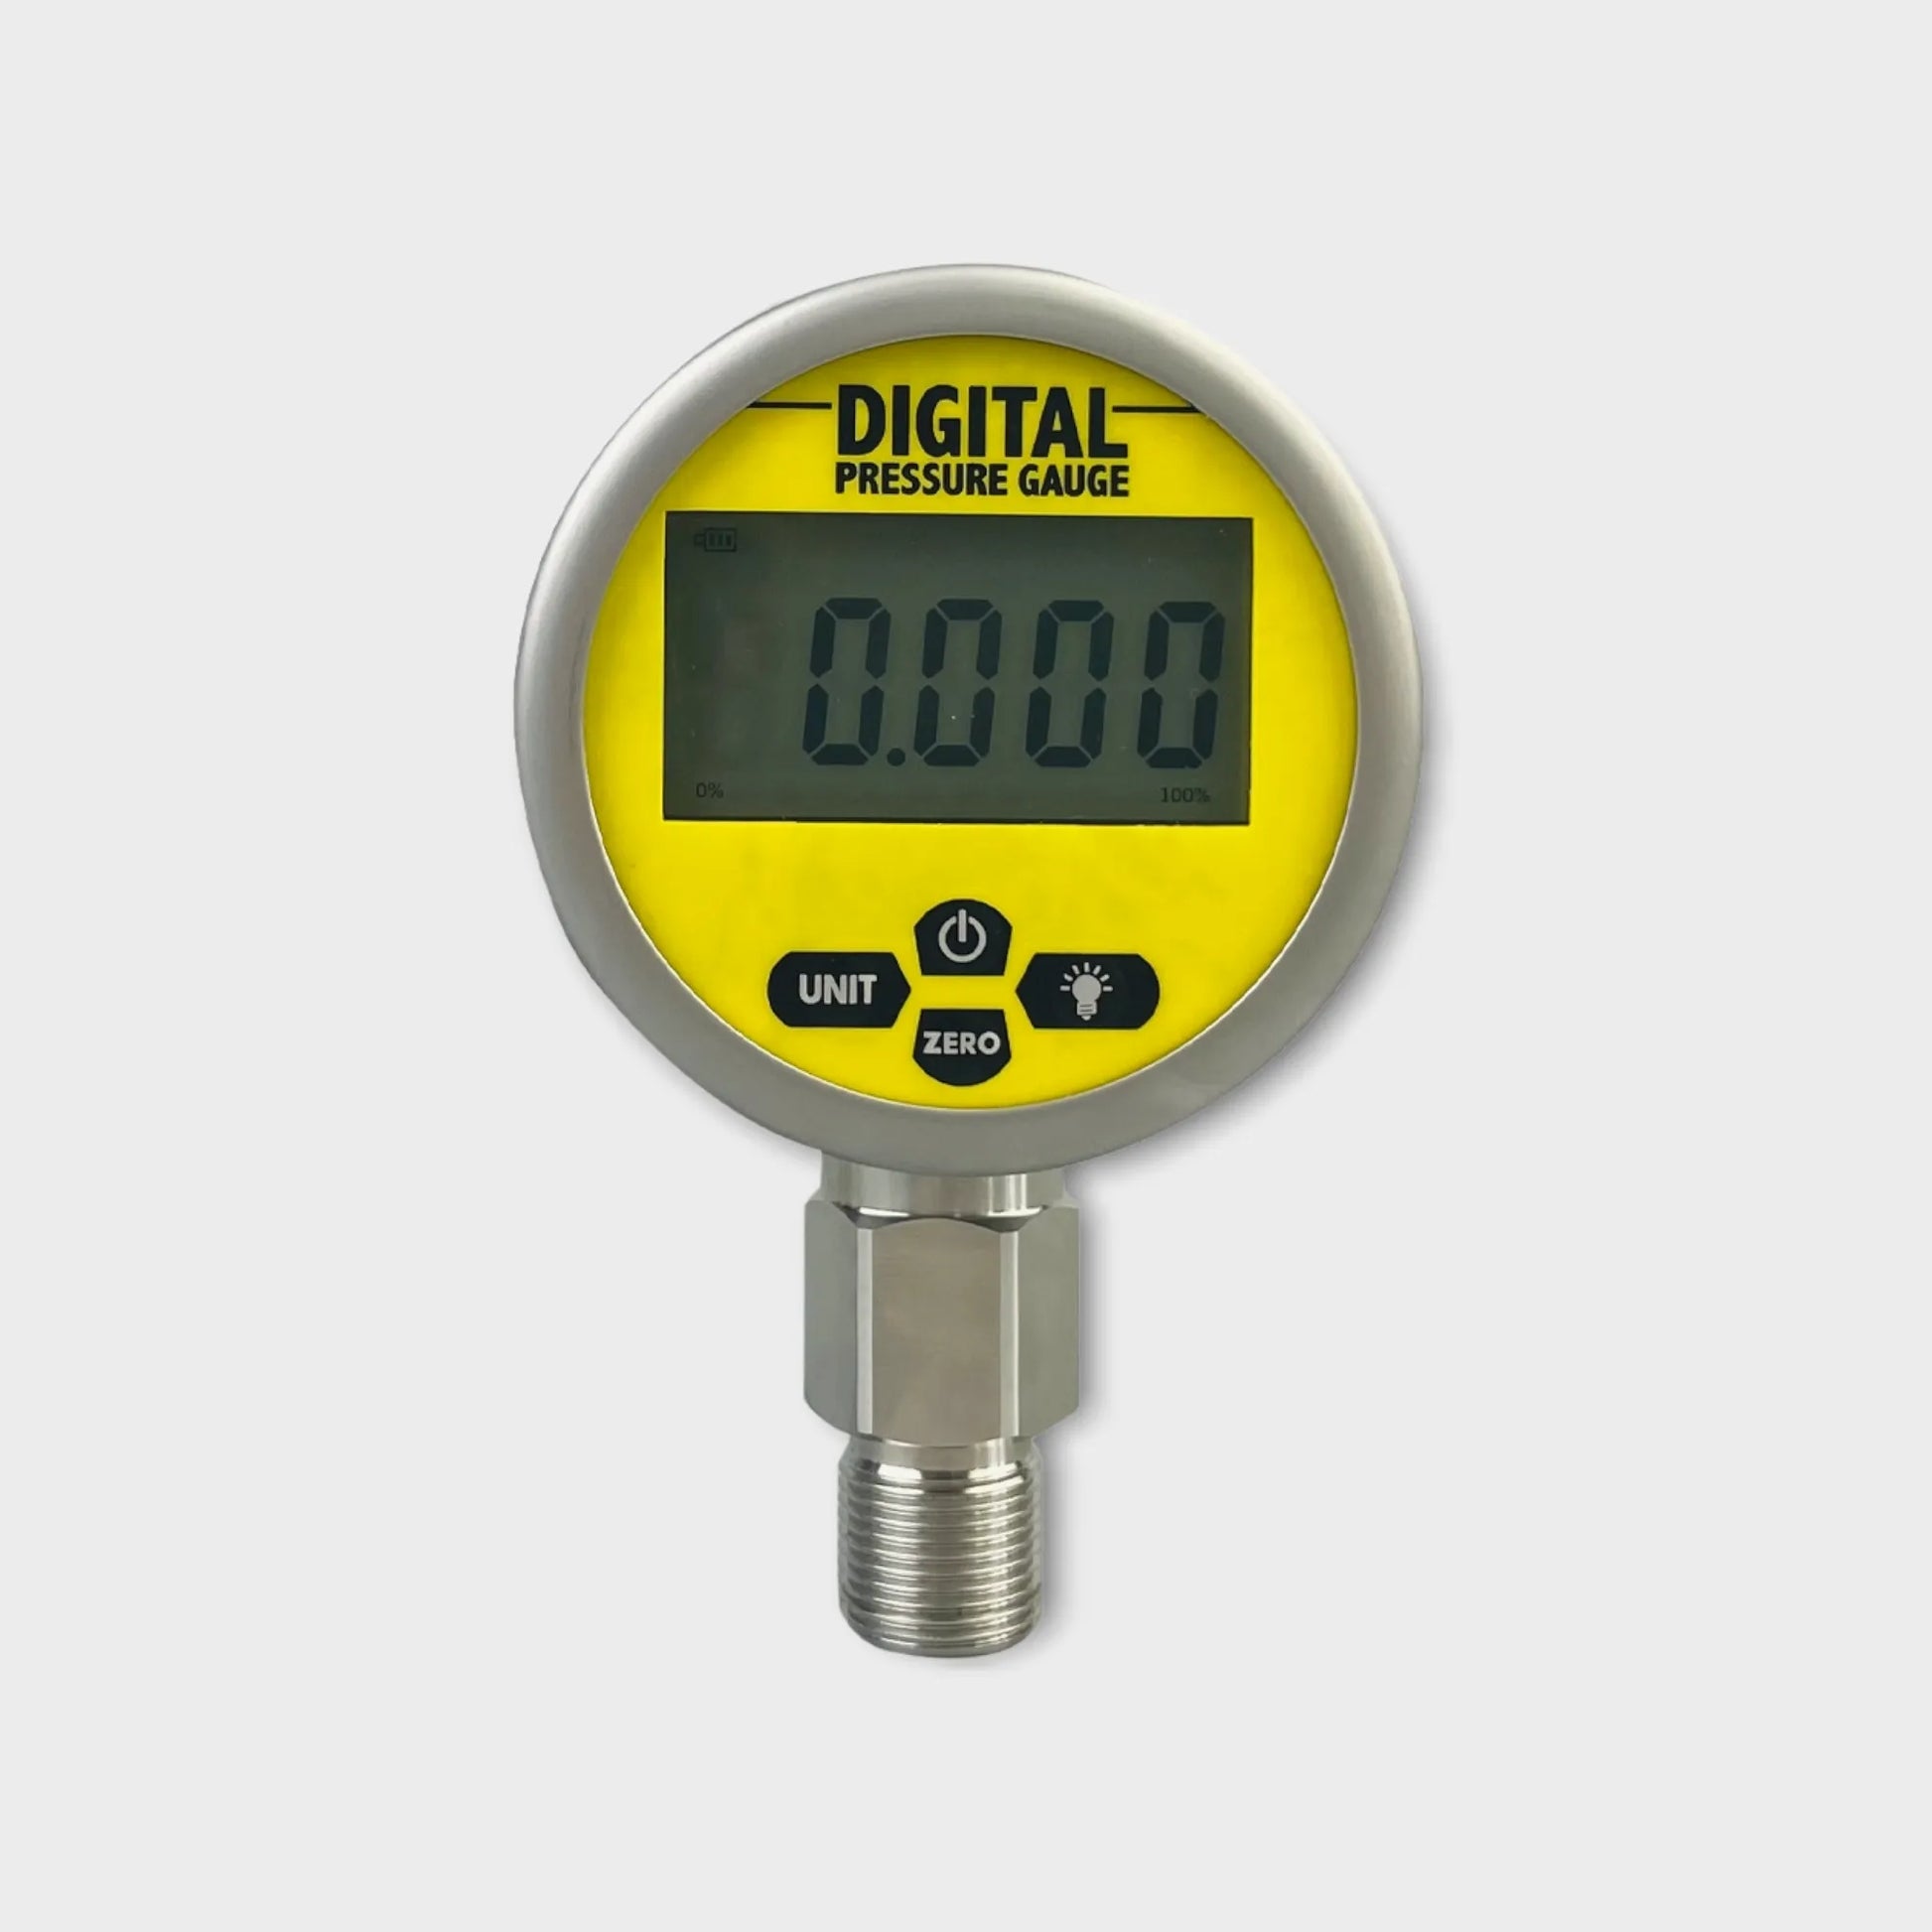 WESEN D280C Series digital pressure gauge